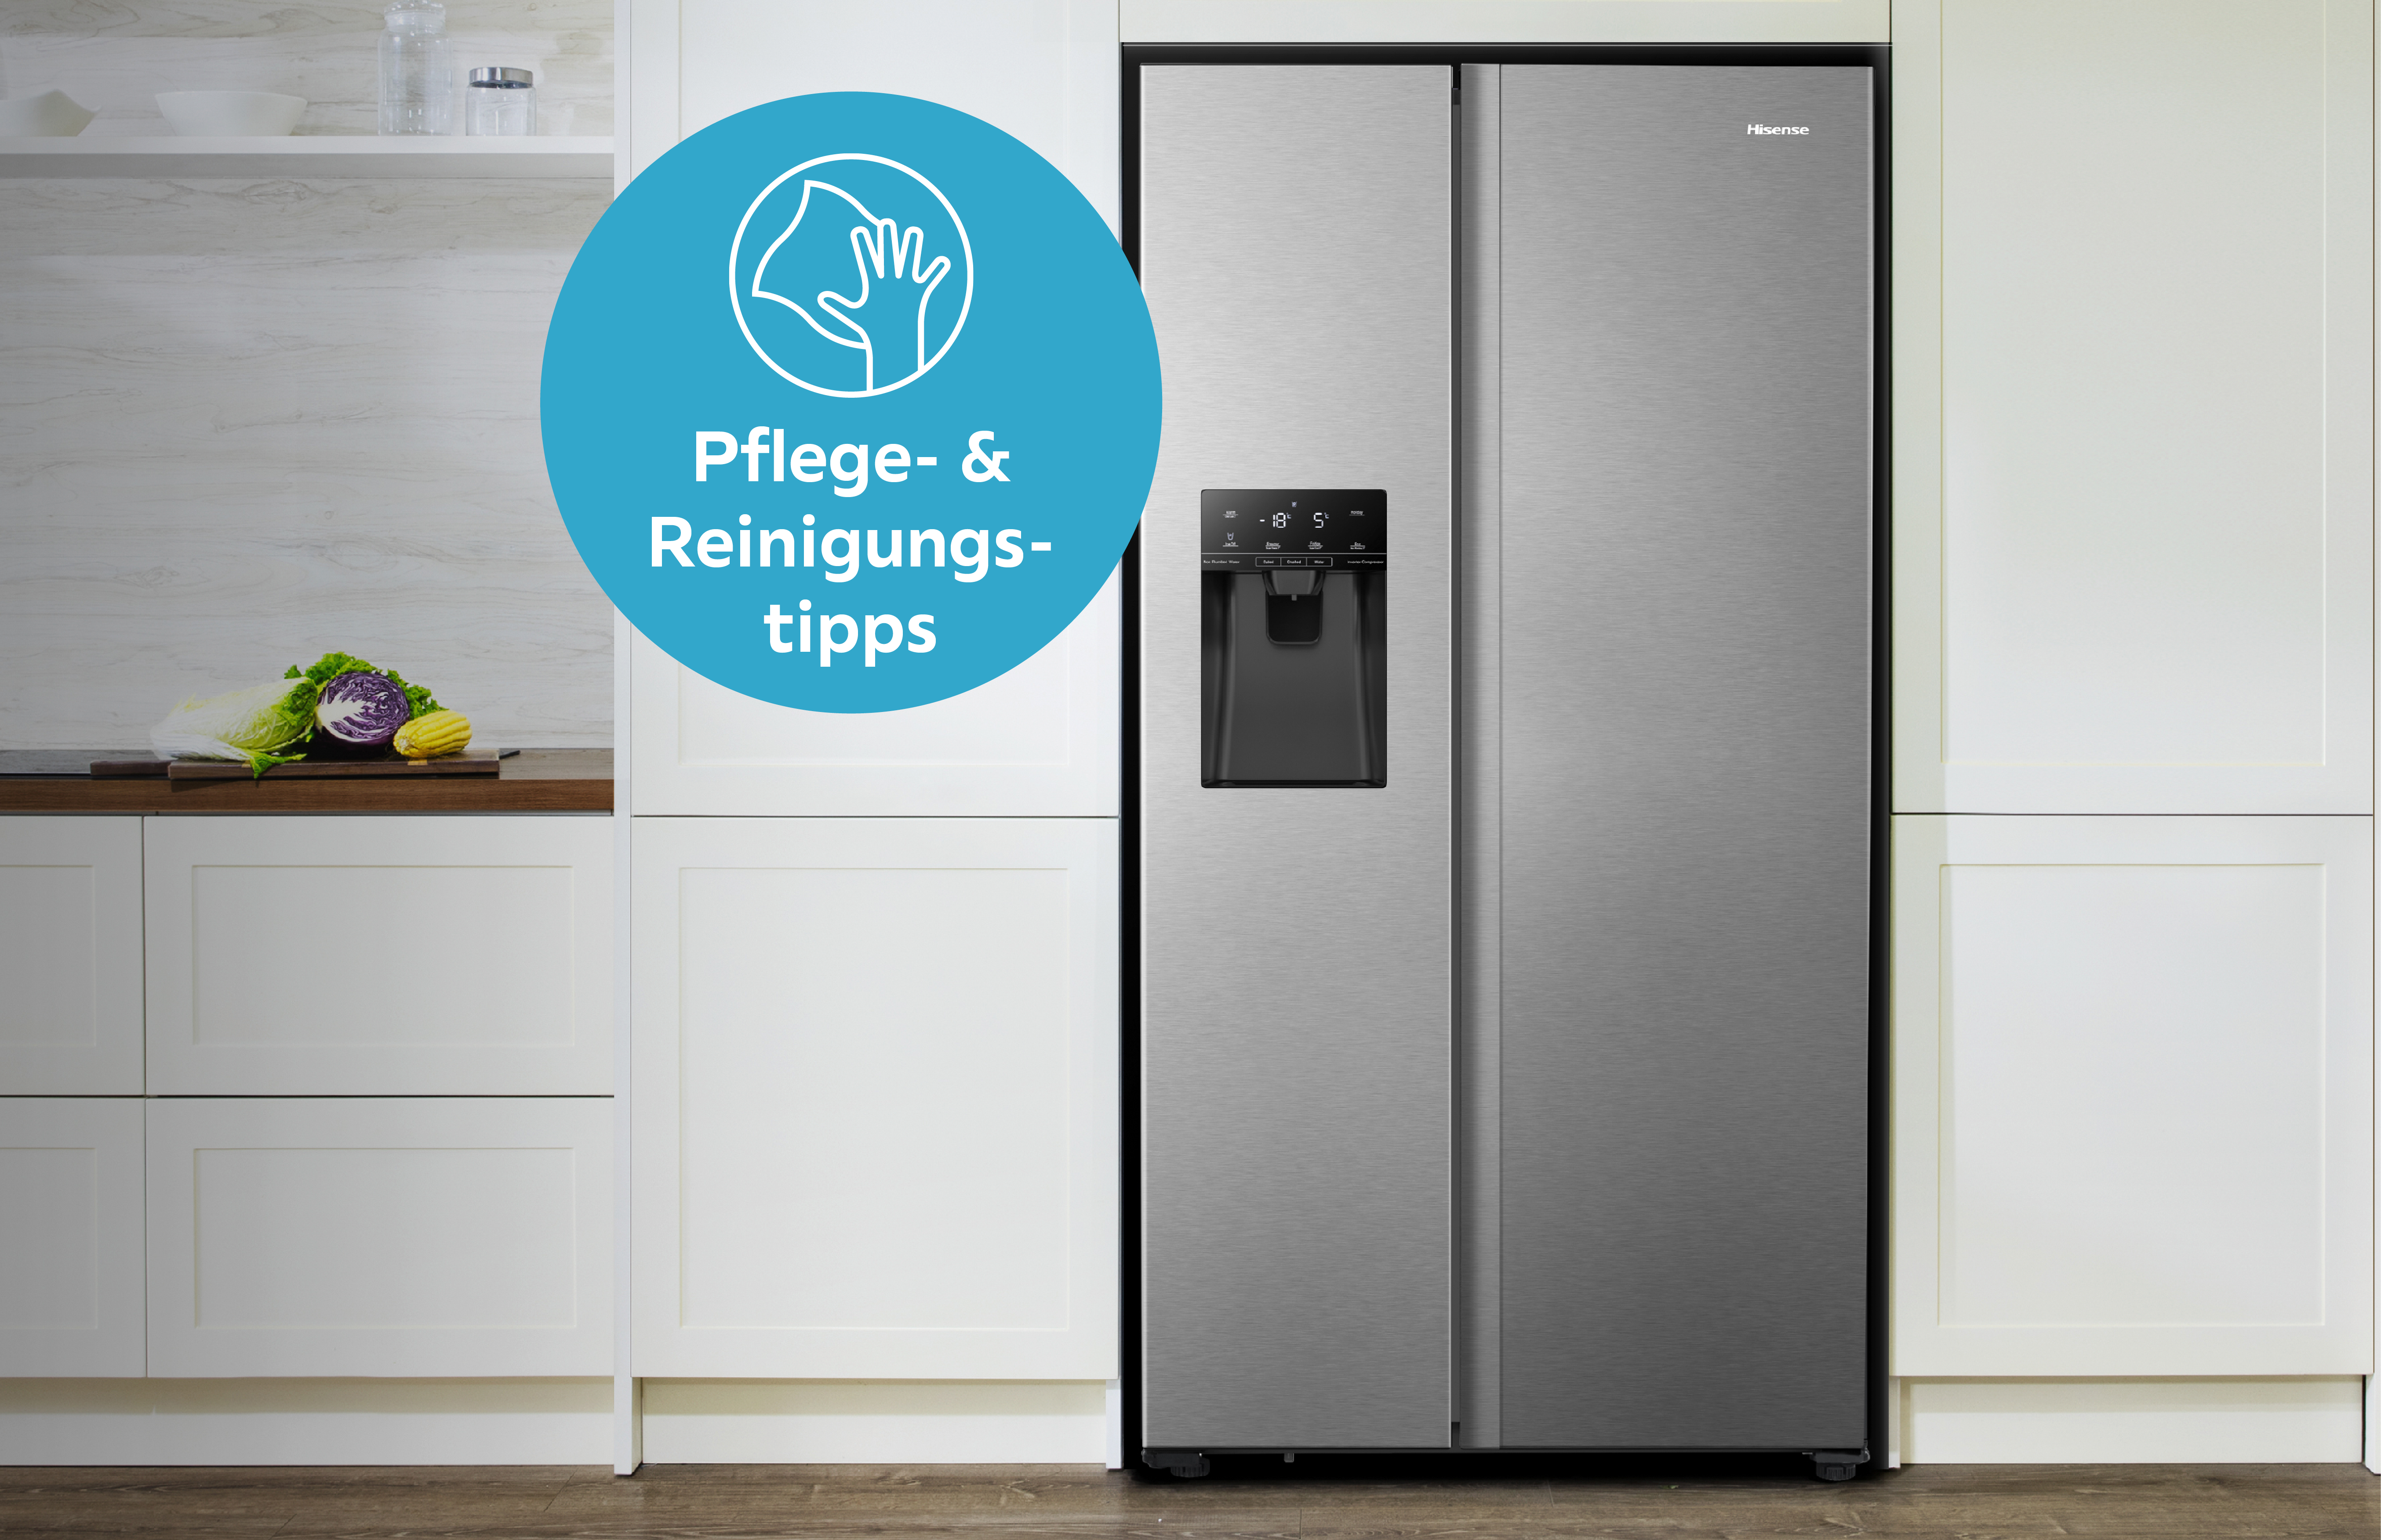 Mini Kühlschränke online kaufen